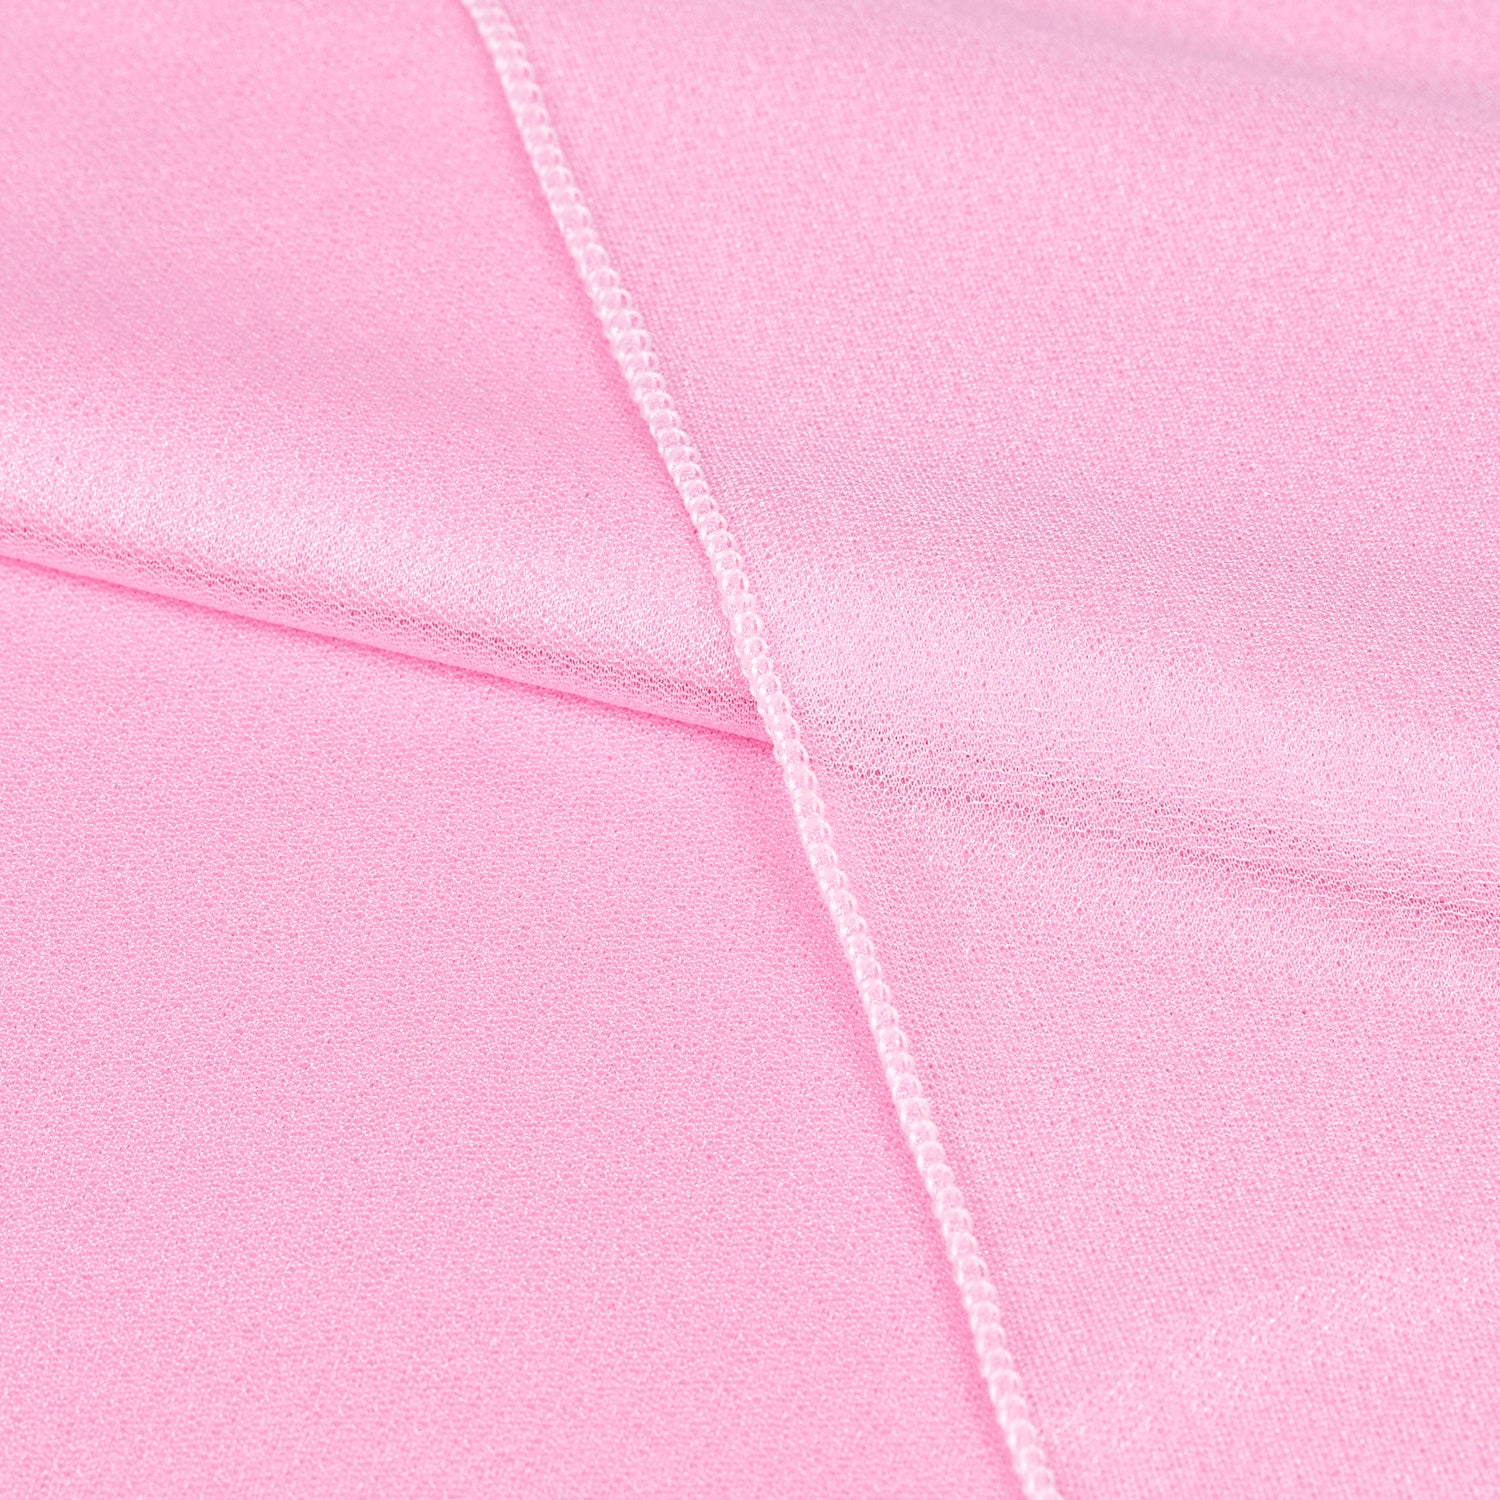 Bubblegum Pink,e110a5da-9af3-4100-ad8a-a23b824d6306